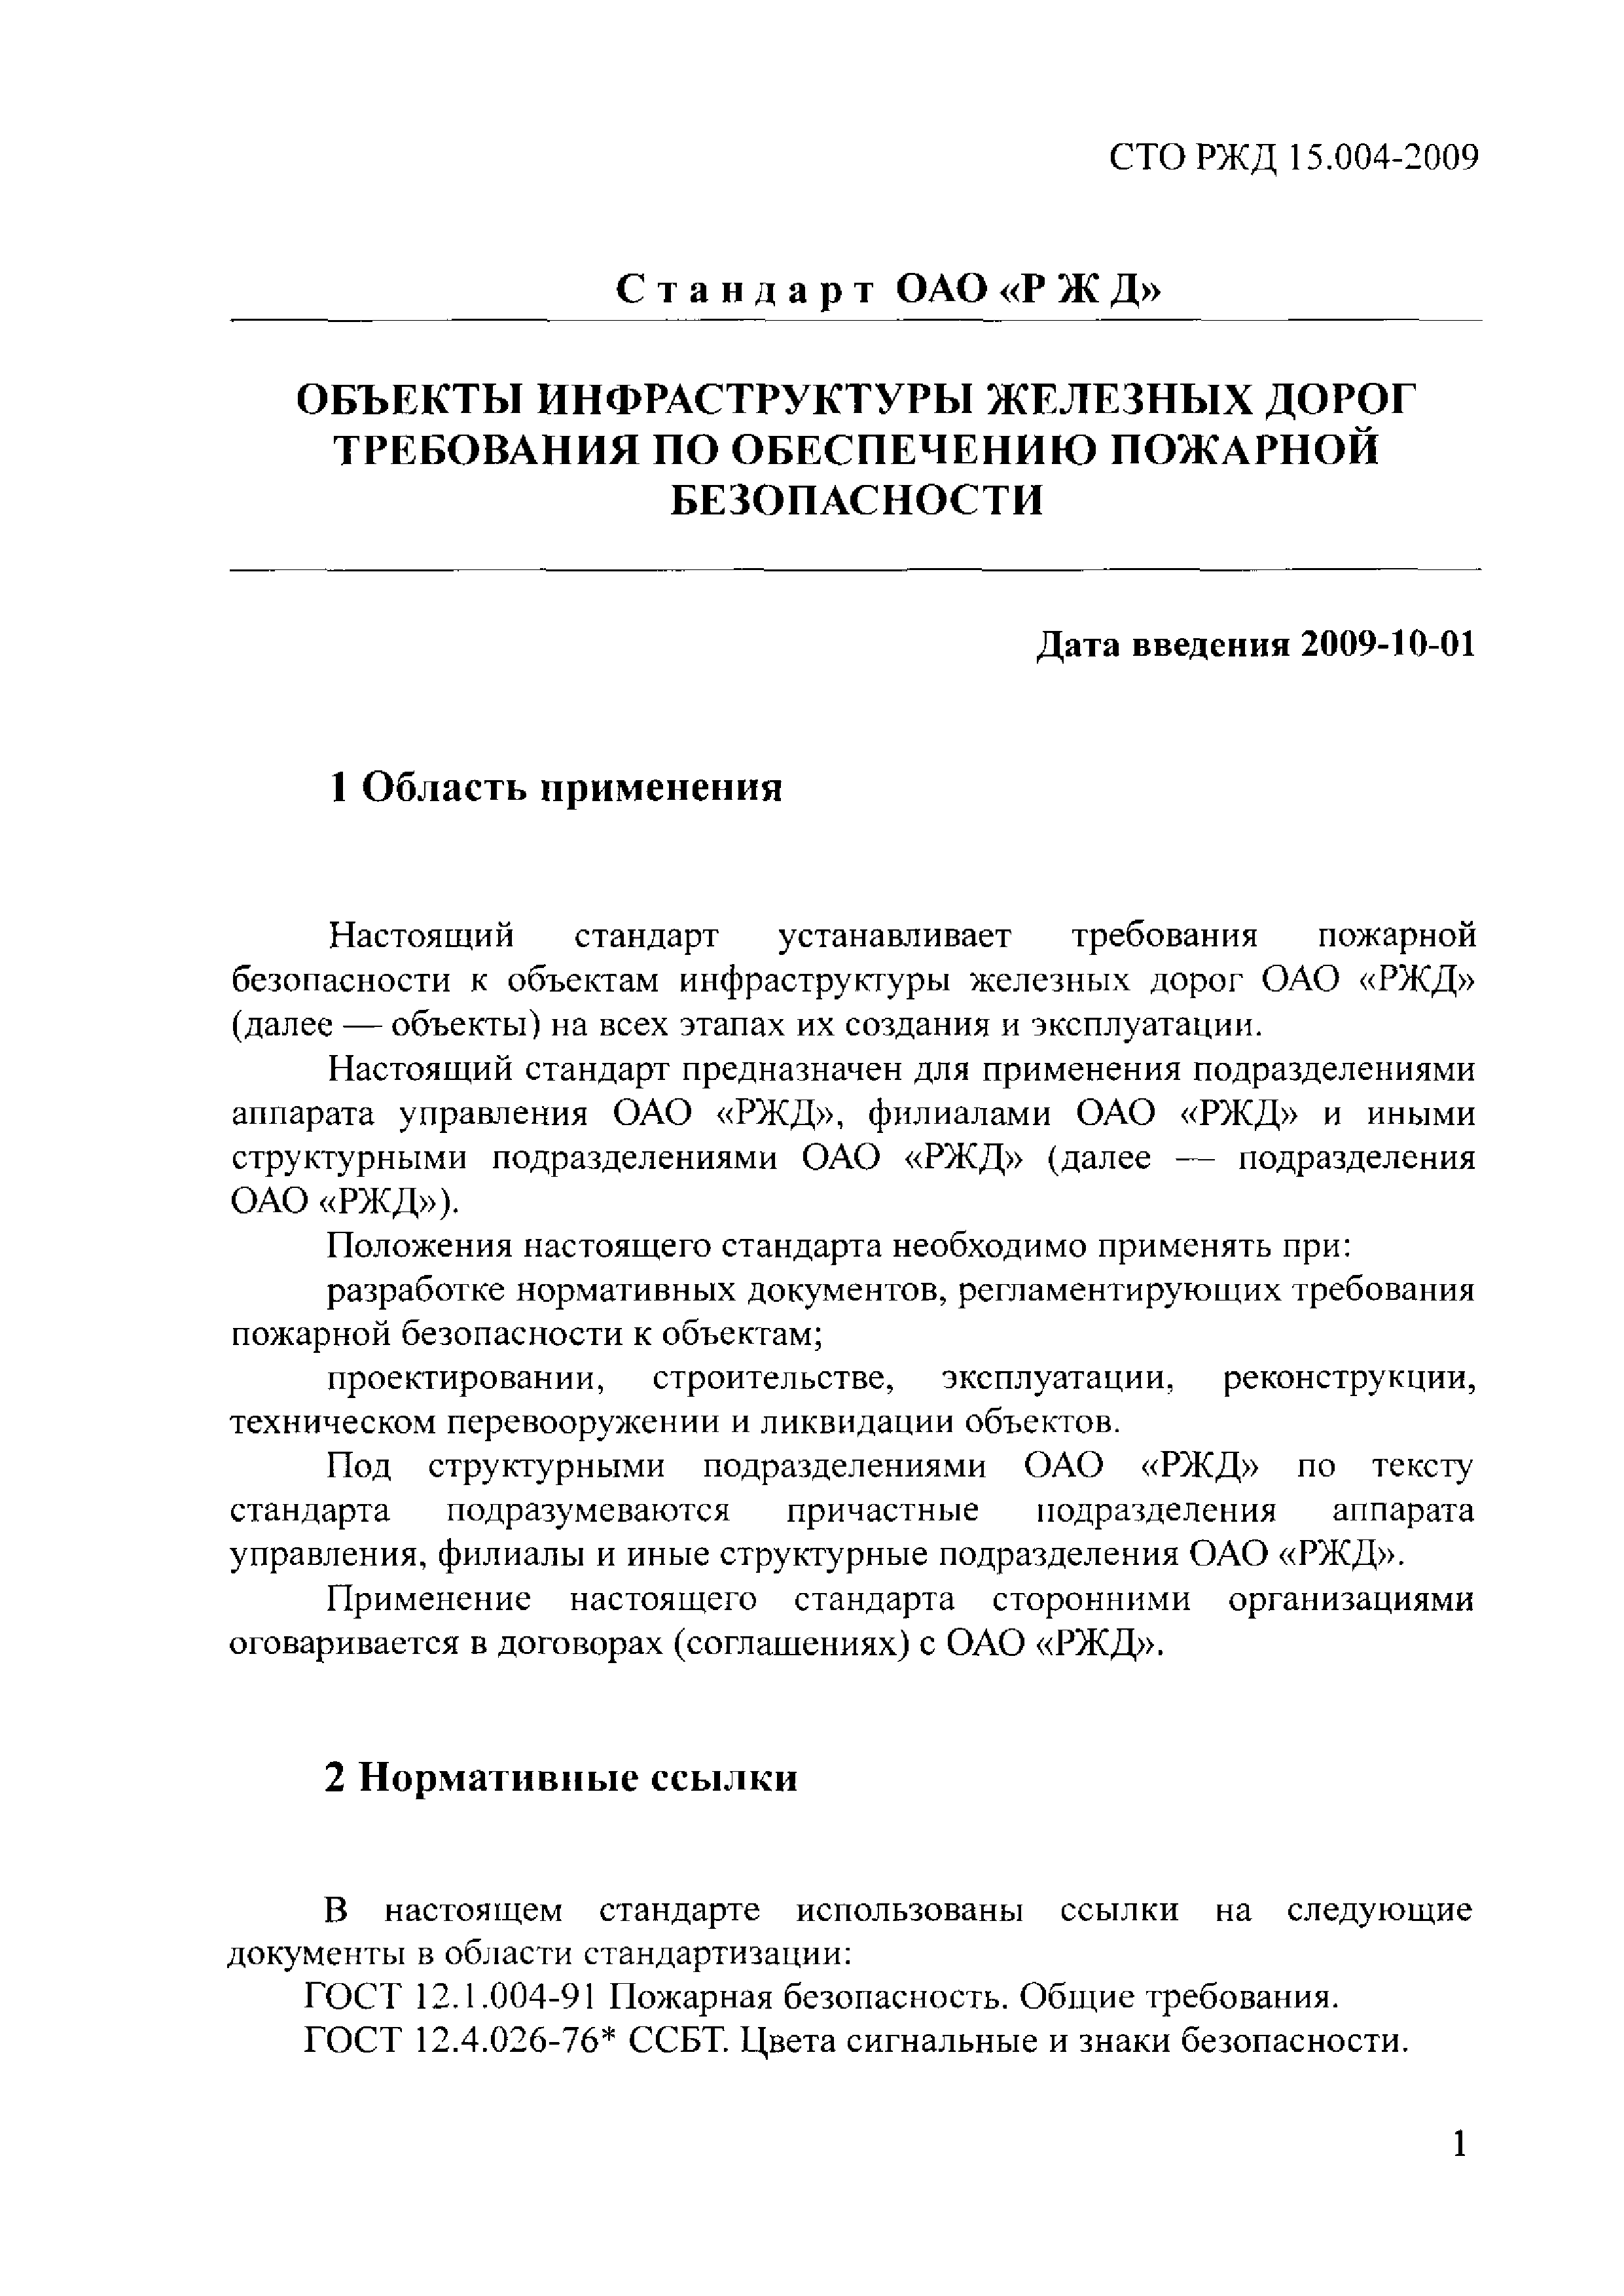 СТО РЖД 1.15.004-2009